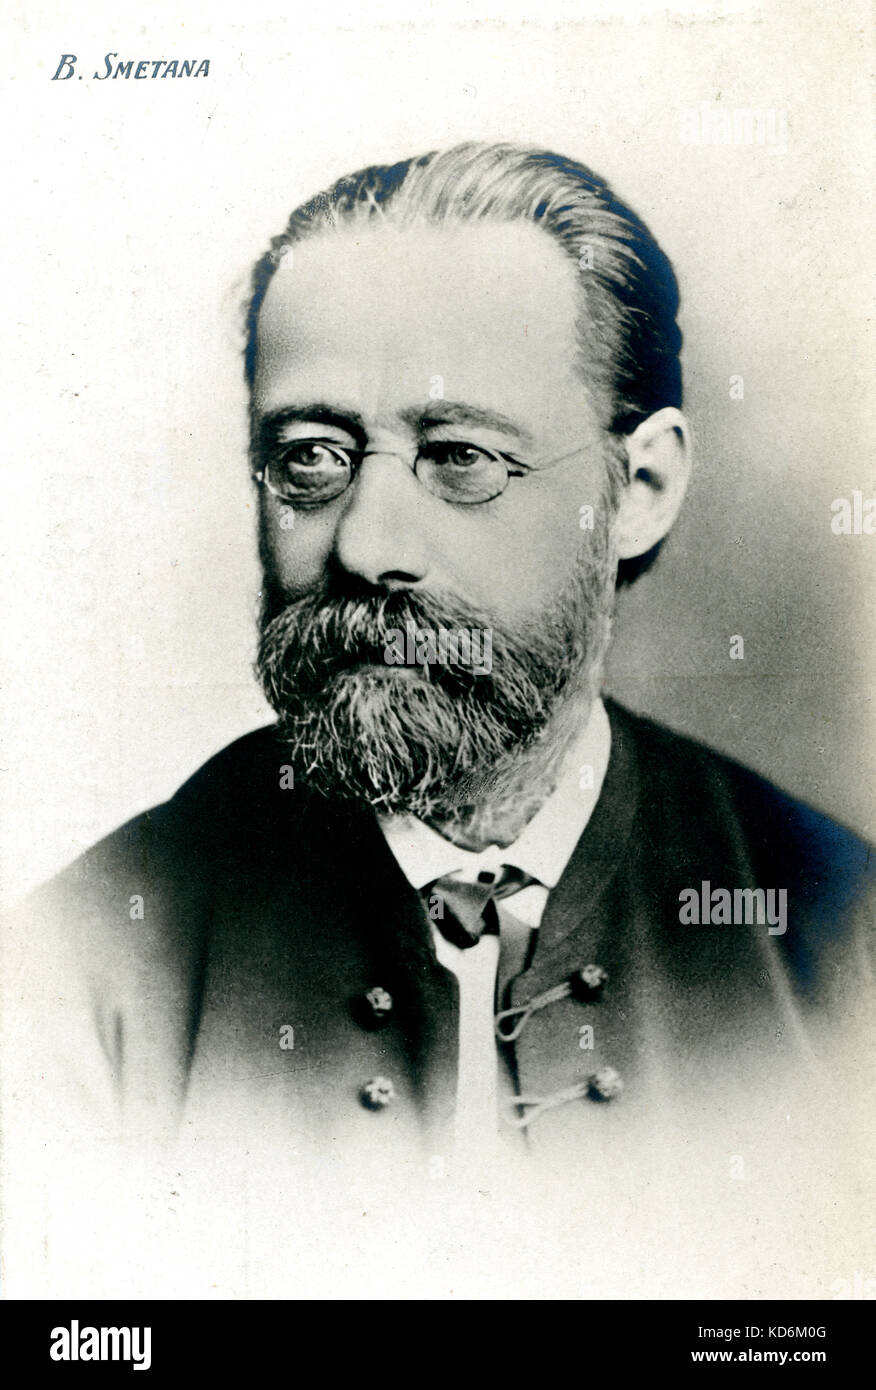 Bedrich Smetana böhmische Komponist, 1824-1884. Stockfoto